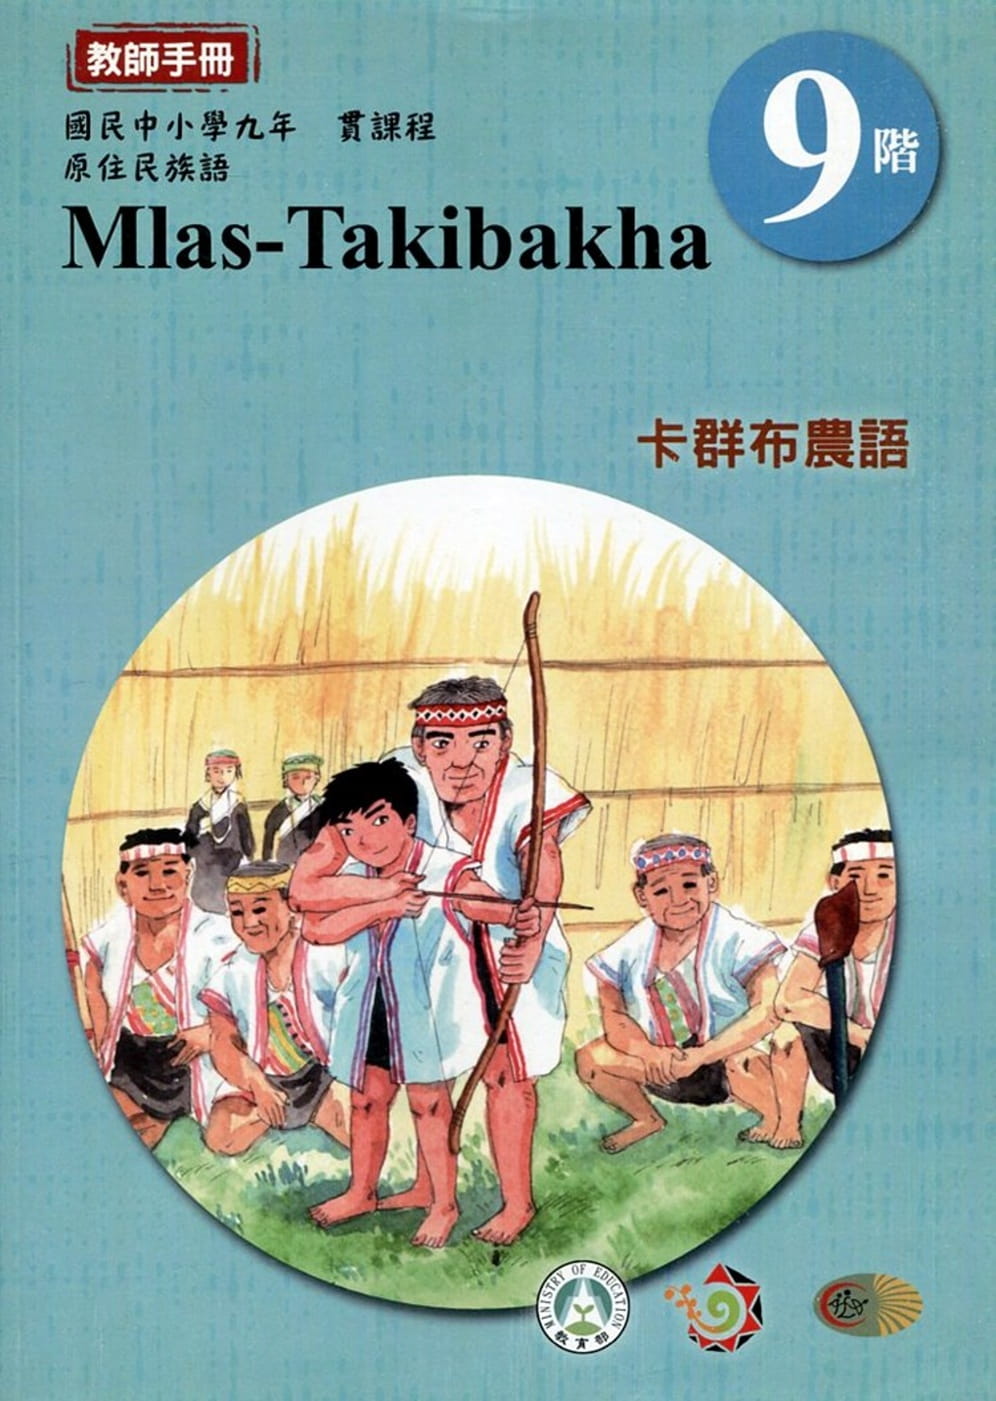 原住民族語卡群布農語第九階教師手冊2版